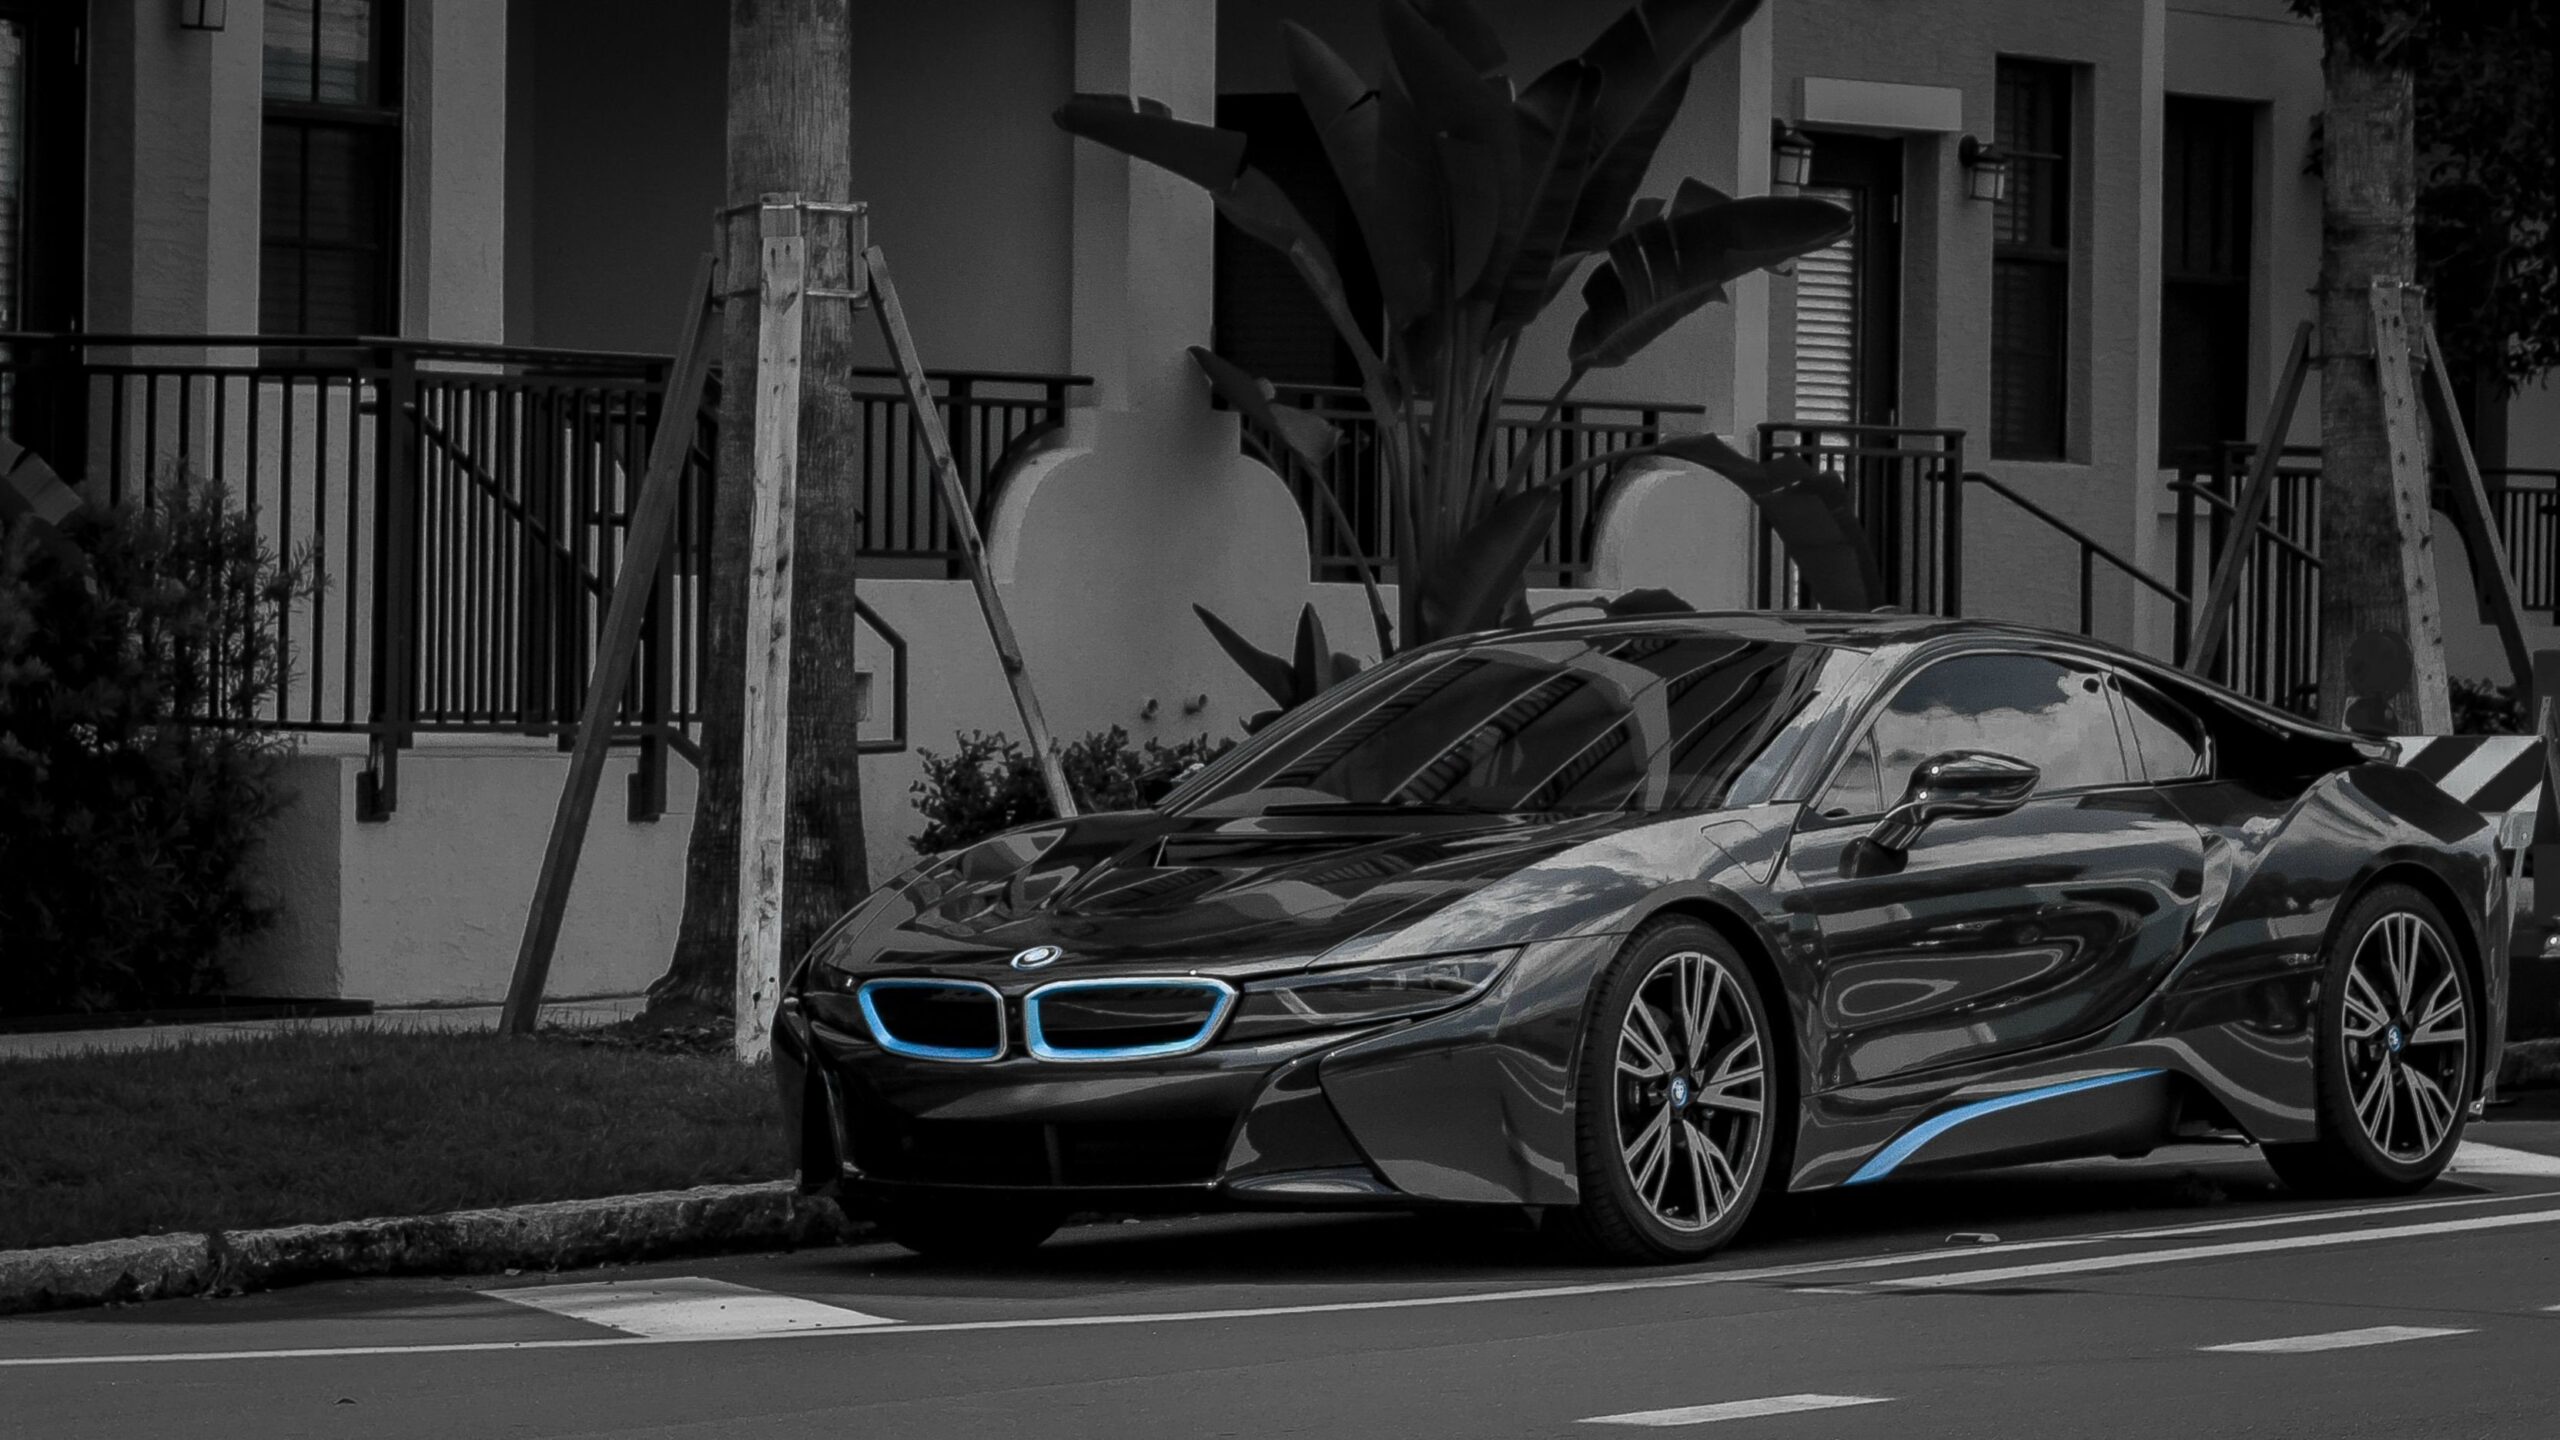 Hình ảnh BMW i8 sắc nét và đẹp mắt 14